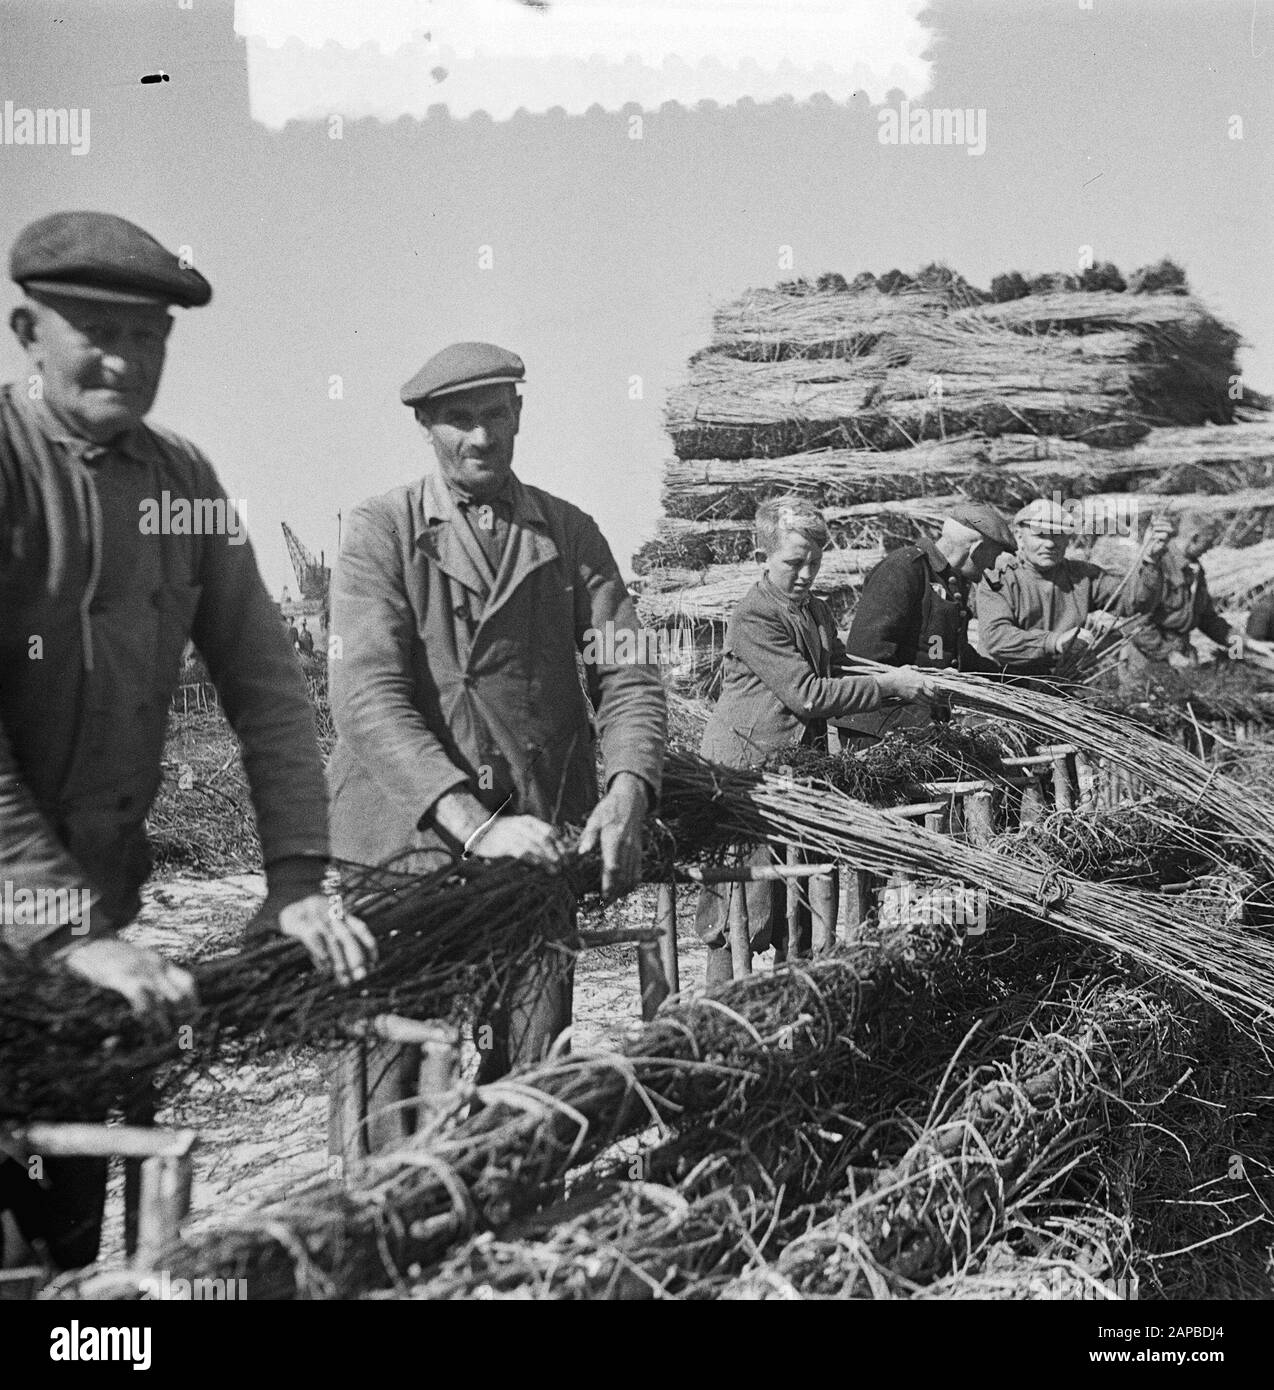 Lo Schelphoek Su Schouwen. Film Making zinco pieces Data: 9 luglio 1953 luogo: Schouwen-Duiveland, Zeeland Parole Chiave: ZINKPIECS Foto Stock